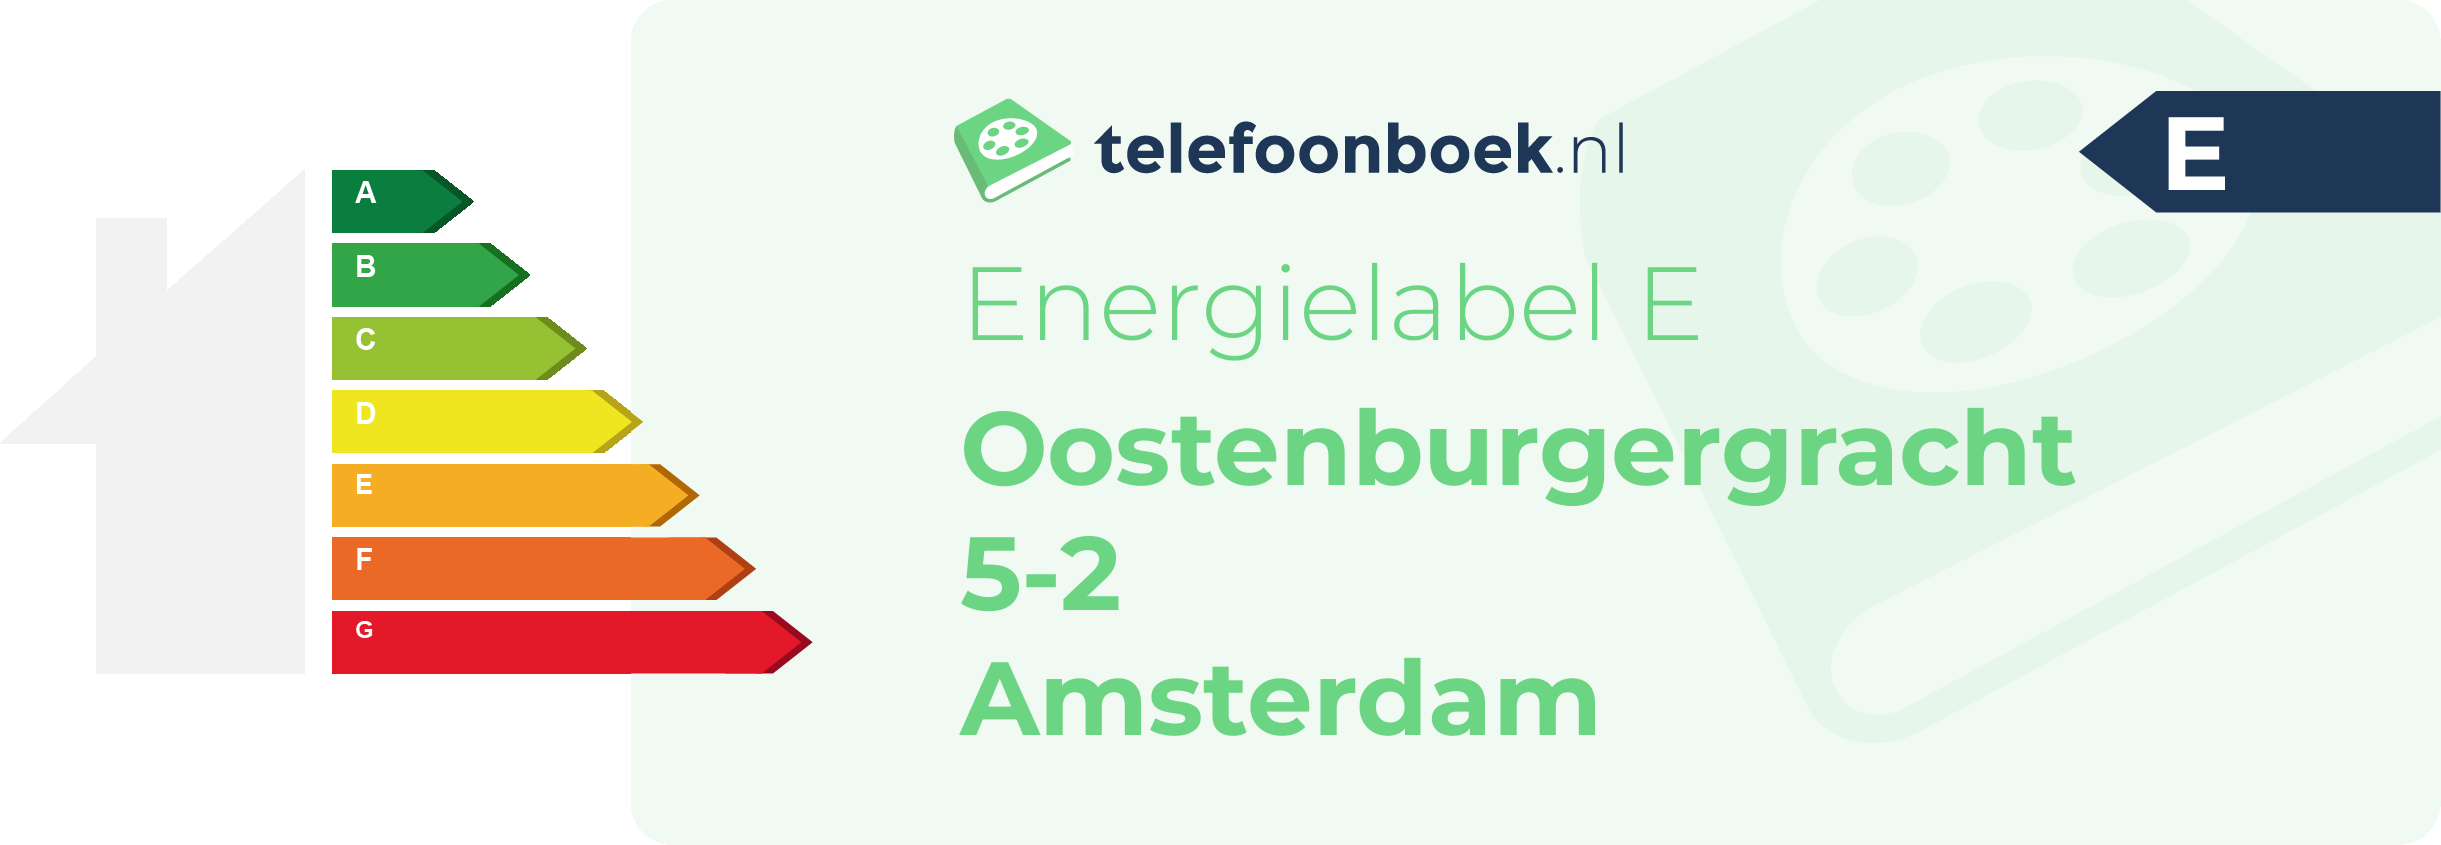 Energielabel Oostenburgergracht 5-2 Amsterdam